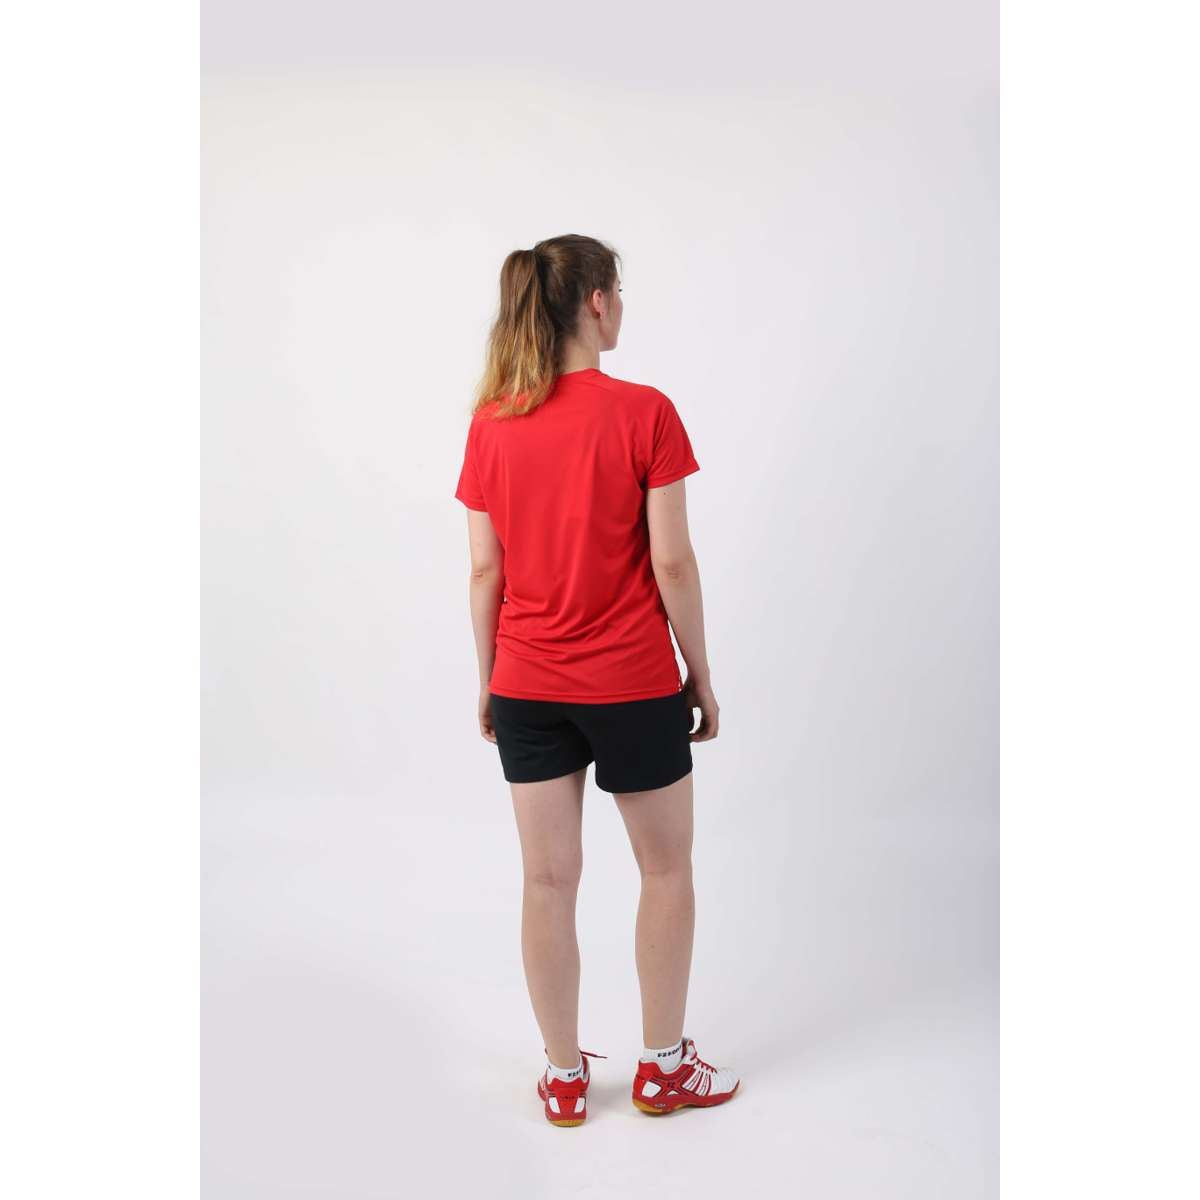 FZ Forza Bali Red Girls / Womens  Badminton T-Shirt